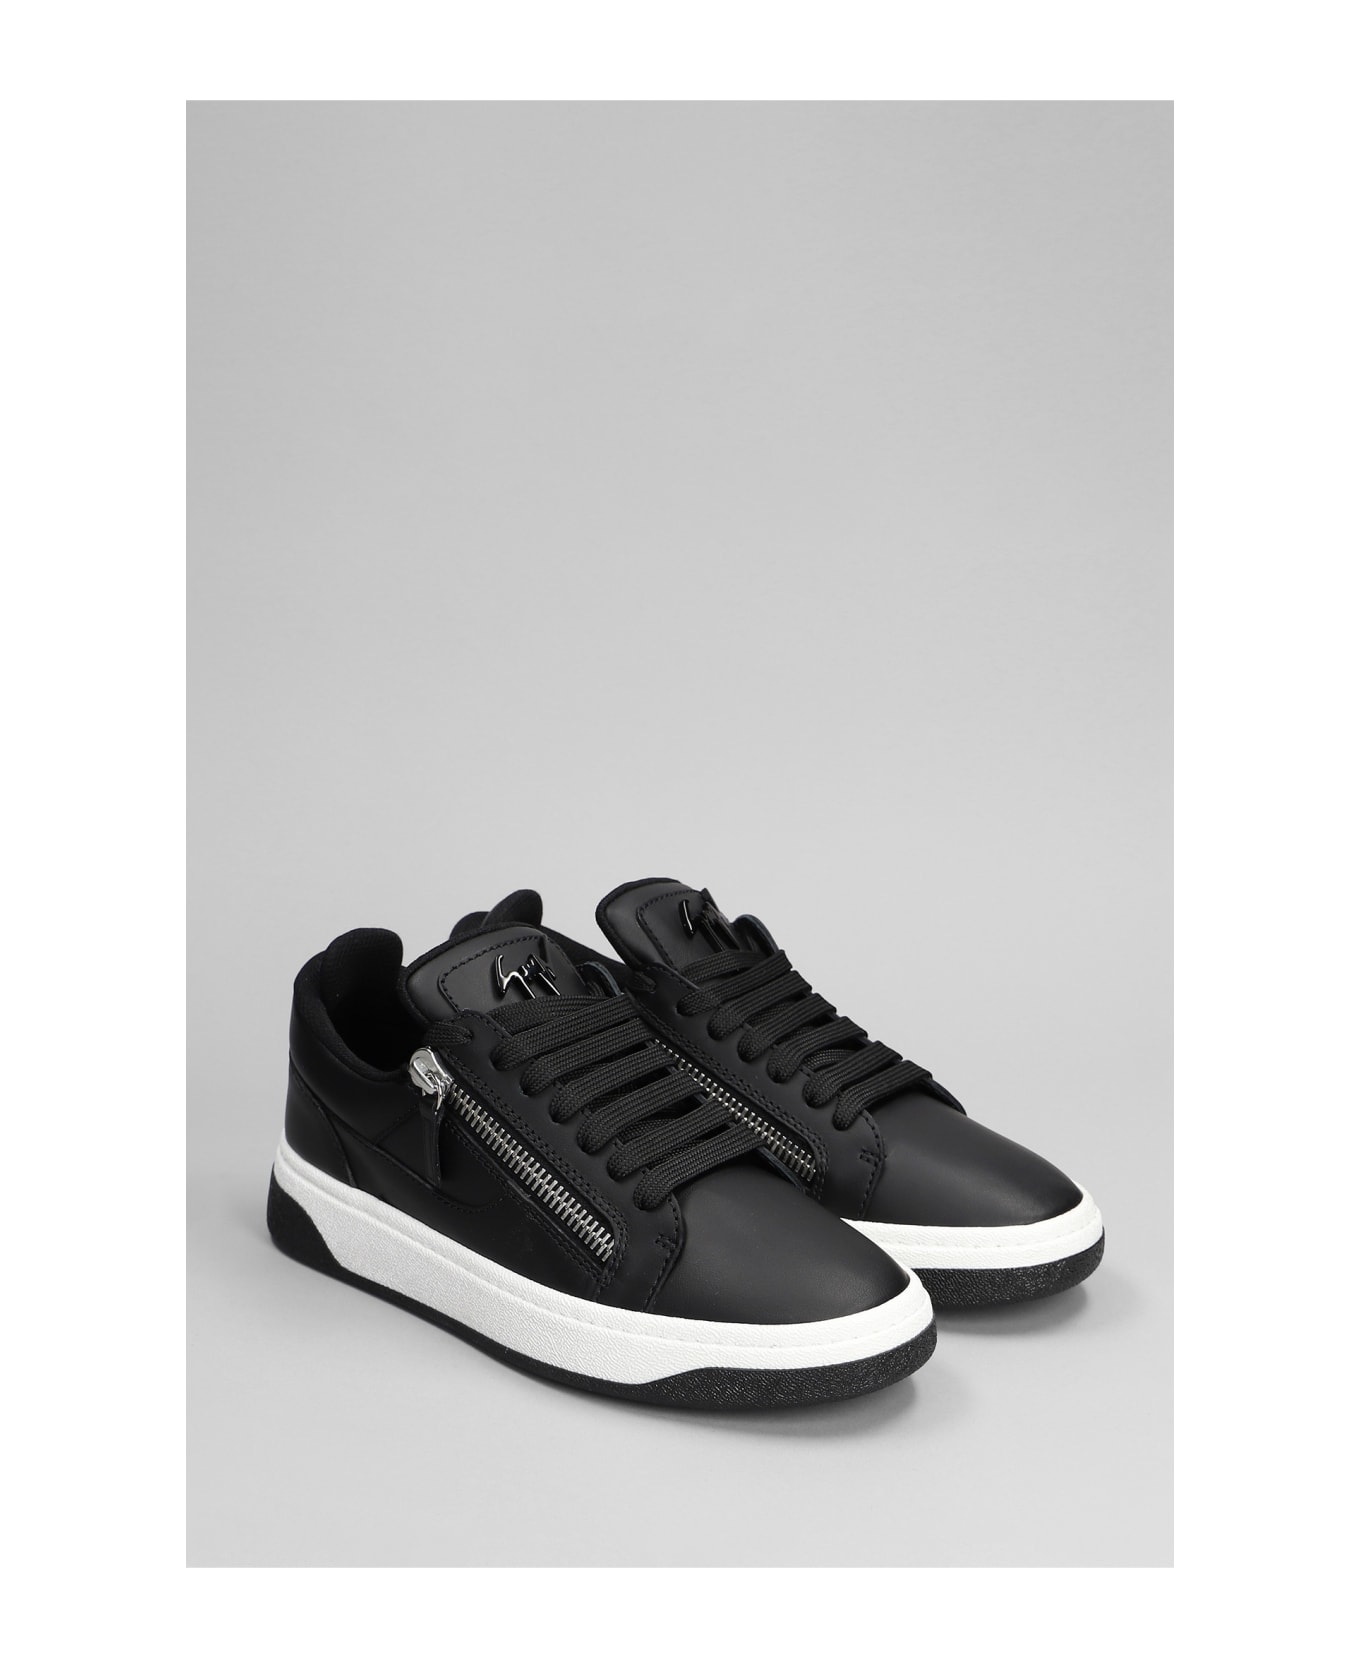 Giuseppe Zanotti Gz94 Sneakers In Black Leather - black